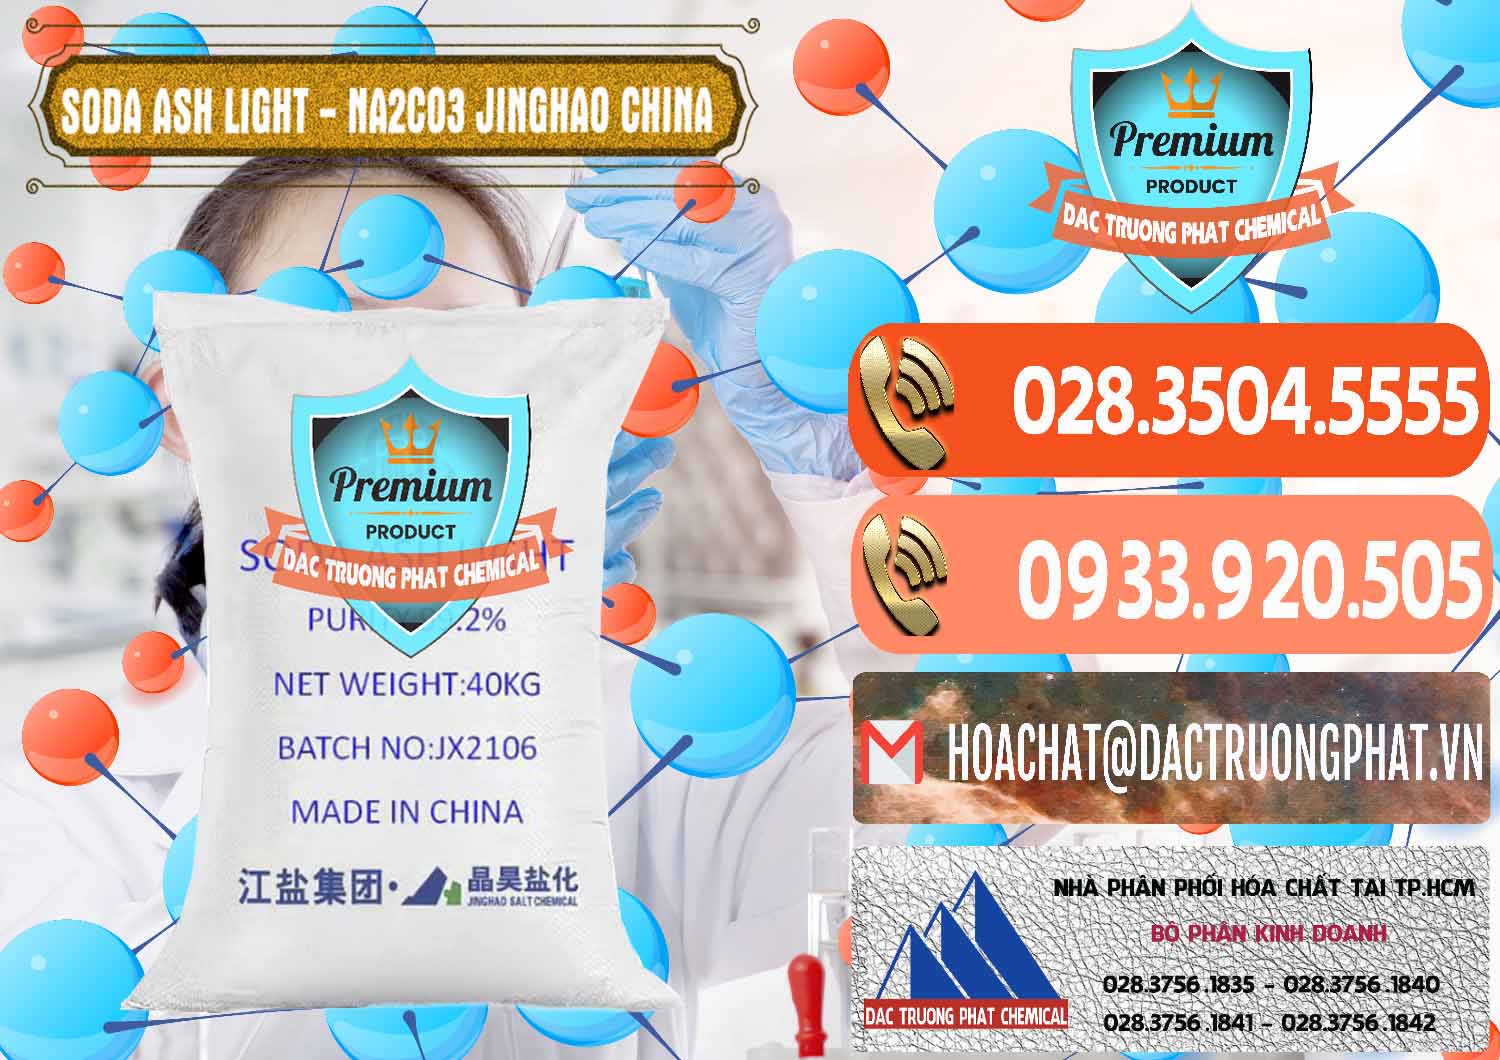 Công ty chuyên cung cấp _ bán Soda Ash Light - NA2CO3 Jinghao Trung Quốc China - 0339 - Nơi chuyên cung cấp và bán hóa chất tại TP.HCM - hoachatmientay.com